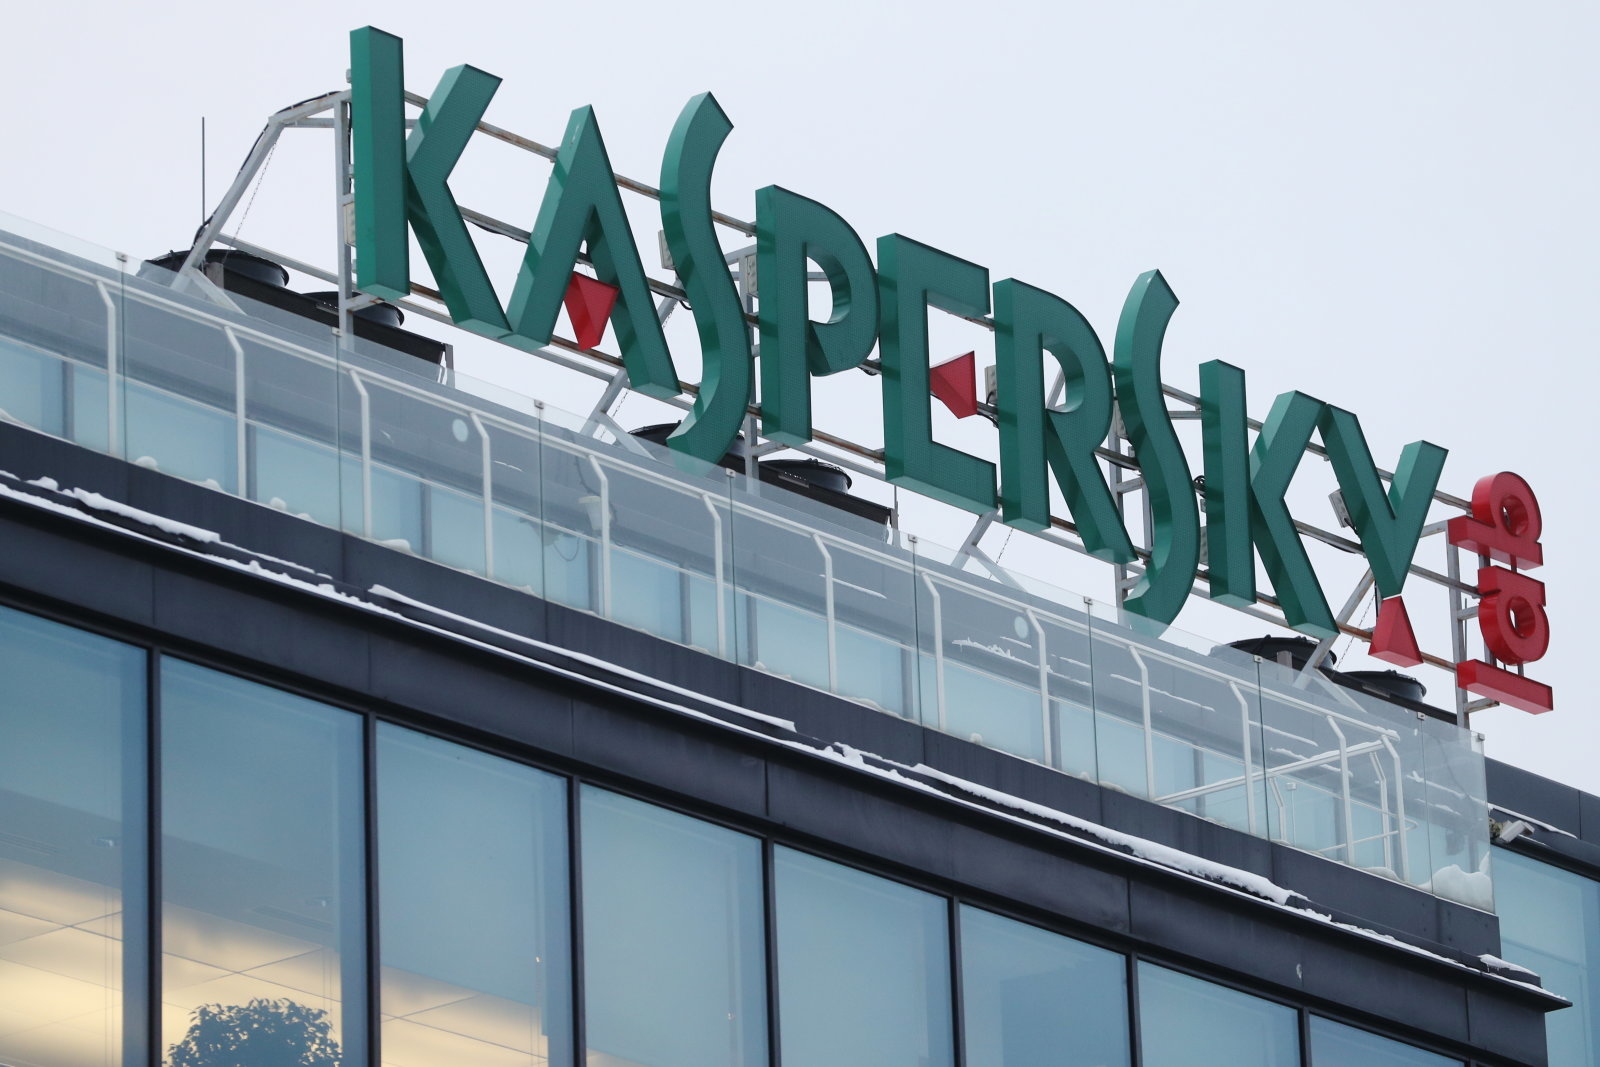 Güvenlik devi Kaspersky, Rus ajanı olmadığını ispat etme peşinde